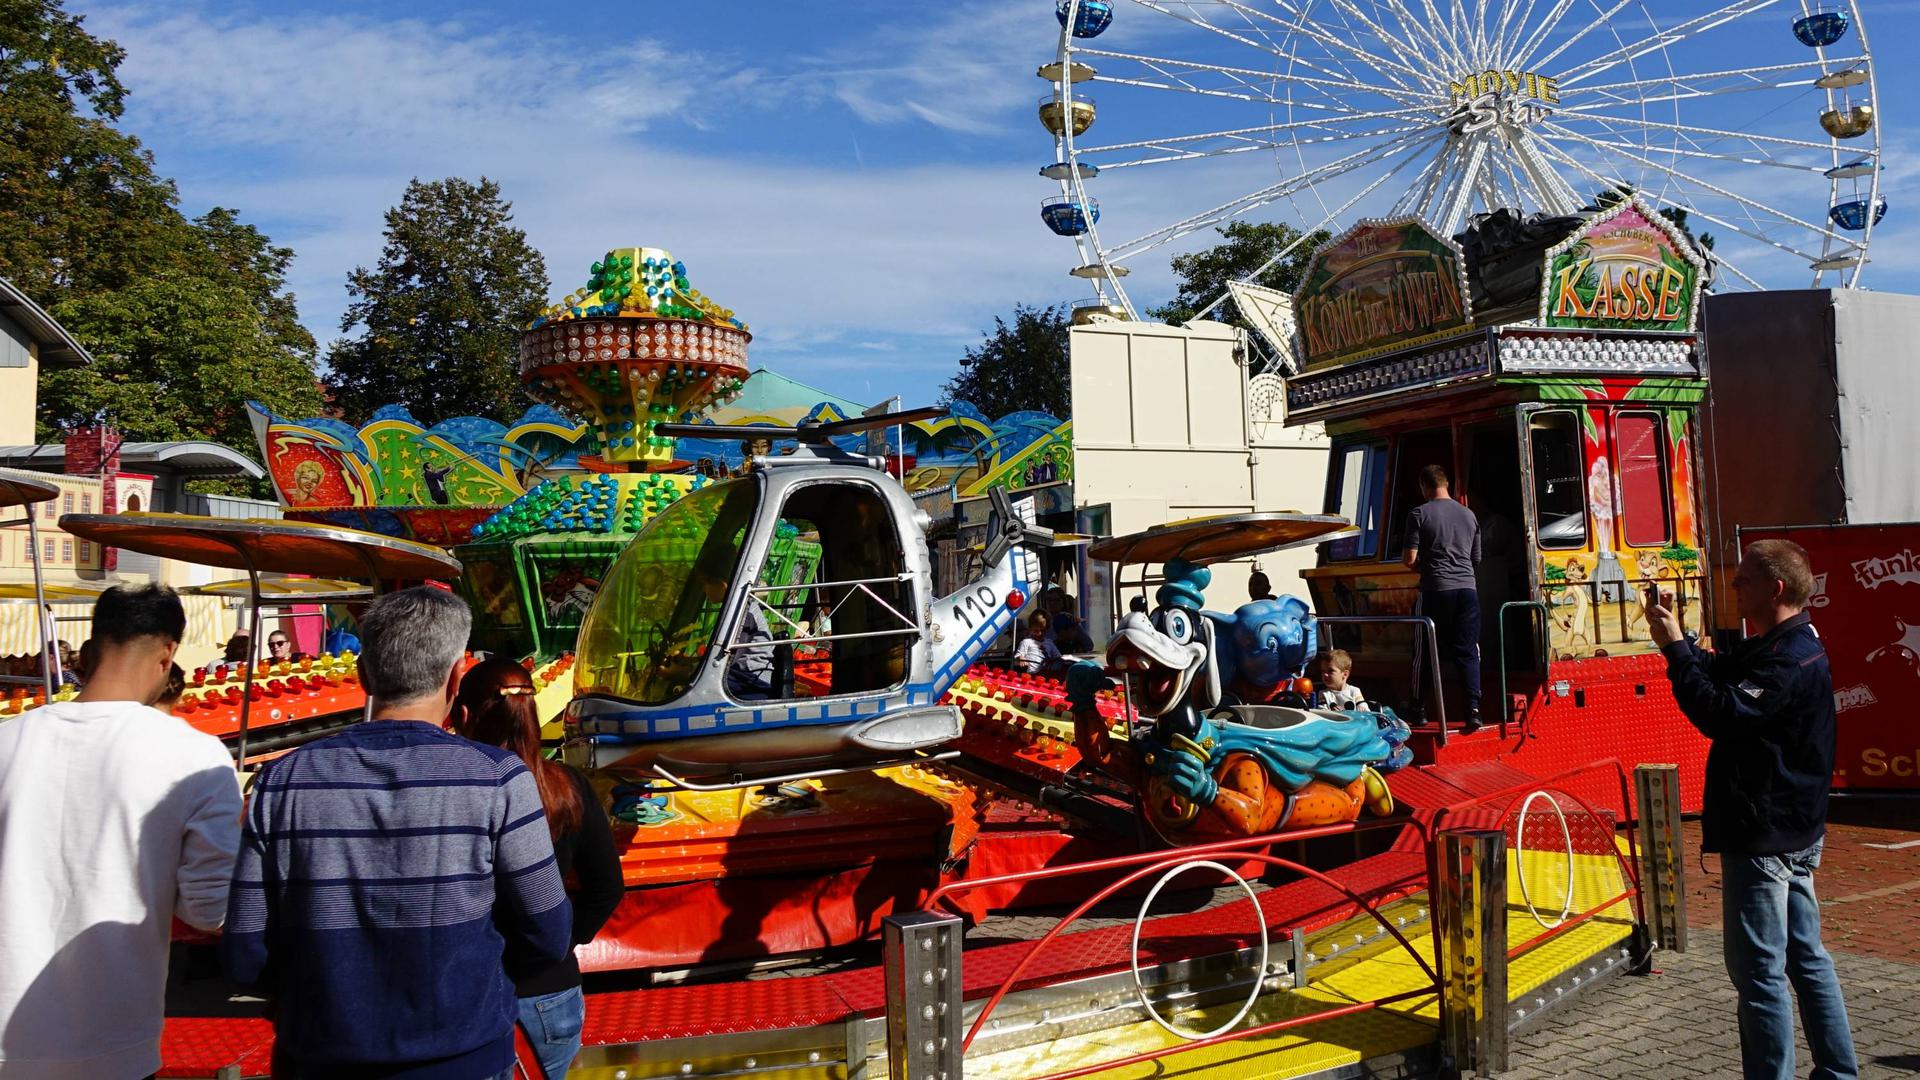 Die Herbstmesse mit ihren Buden und Attraktionen ist alle Jahre wieder ein Höhepunkt in Gaggenau. Ob und wie sie im Corona-Jahr 2020 stattfinden kann, steht jedoch noch nicht fest.